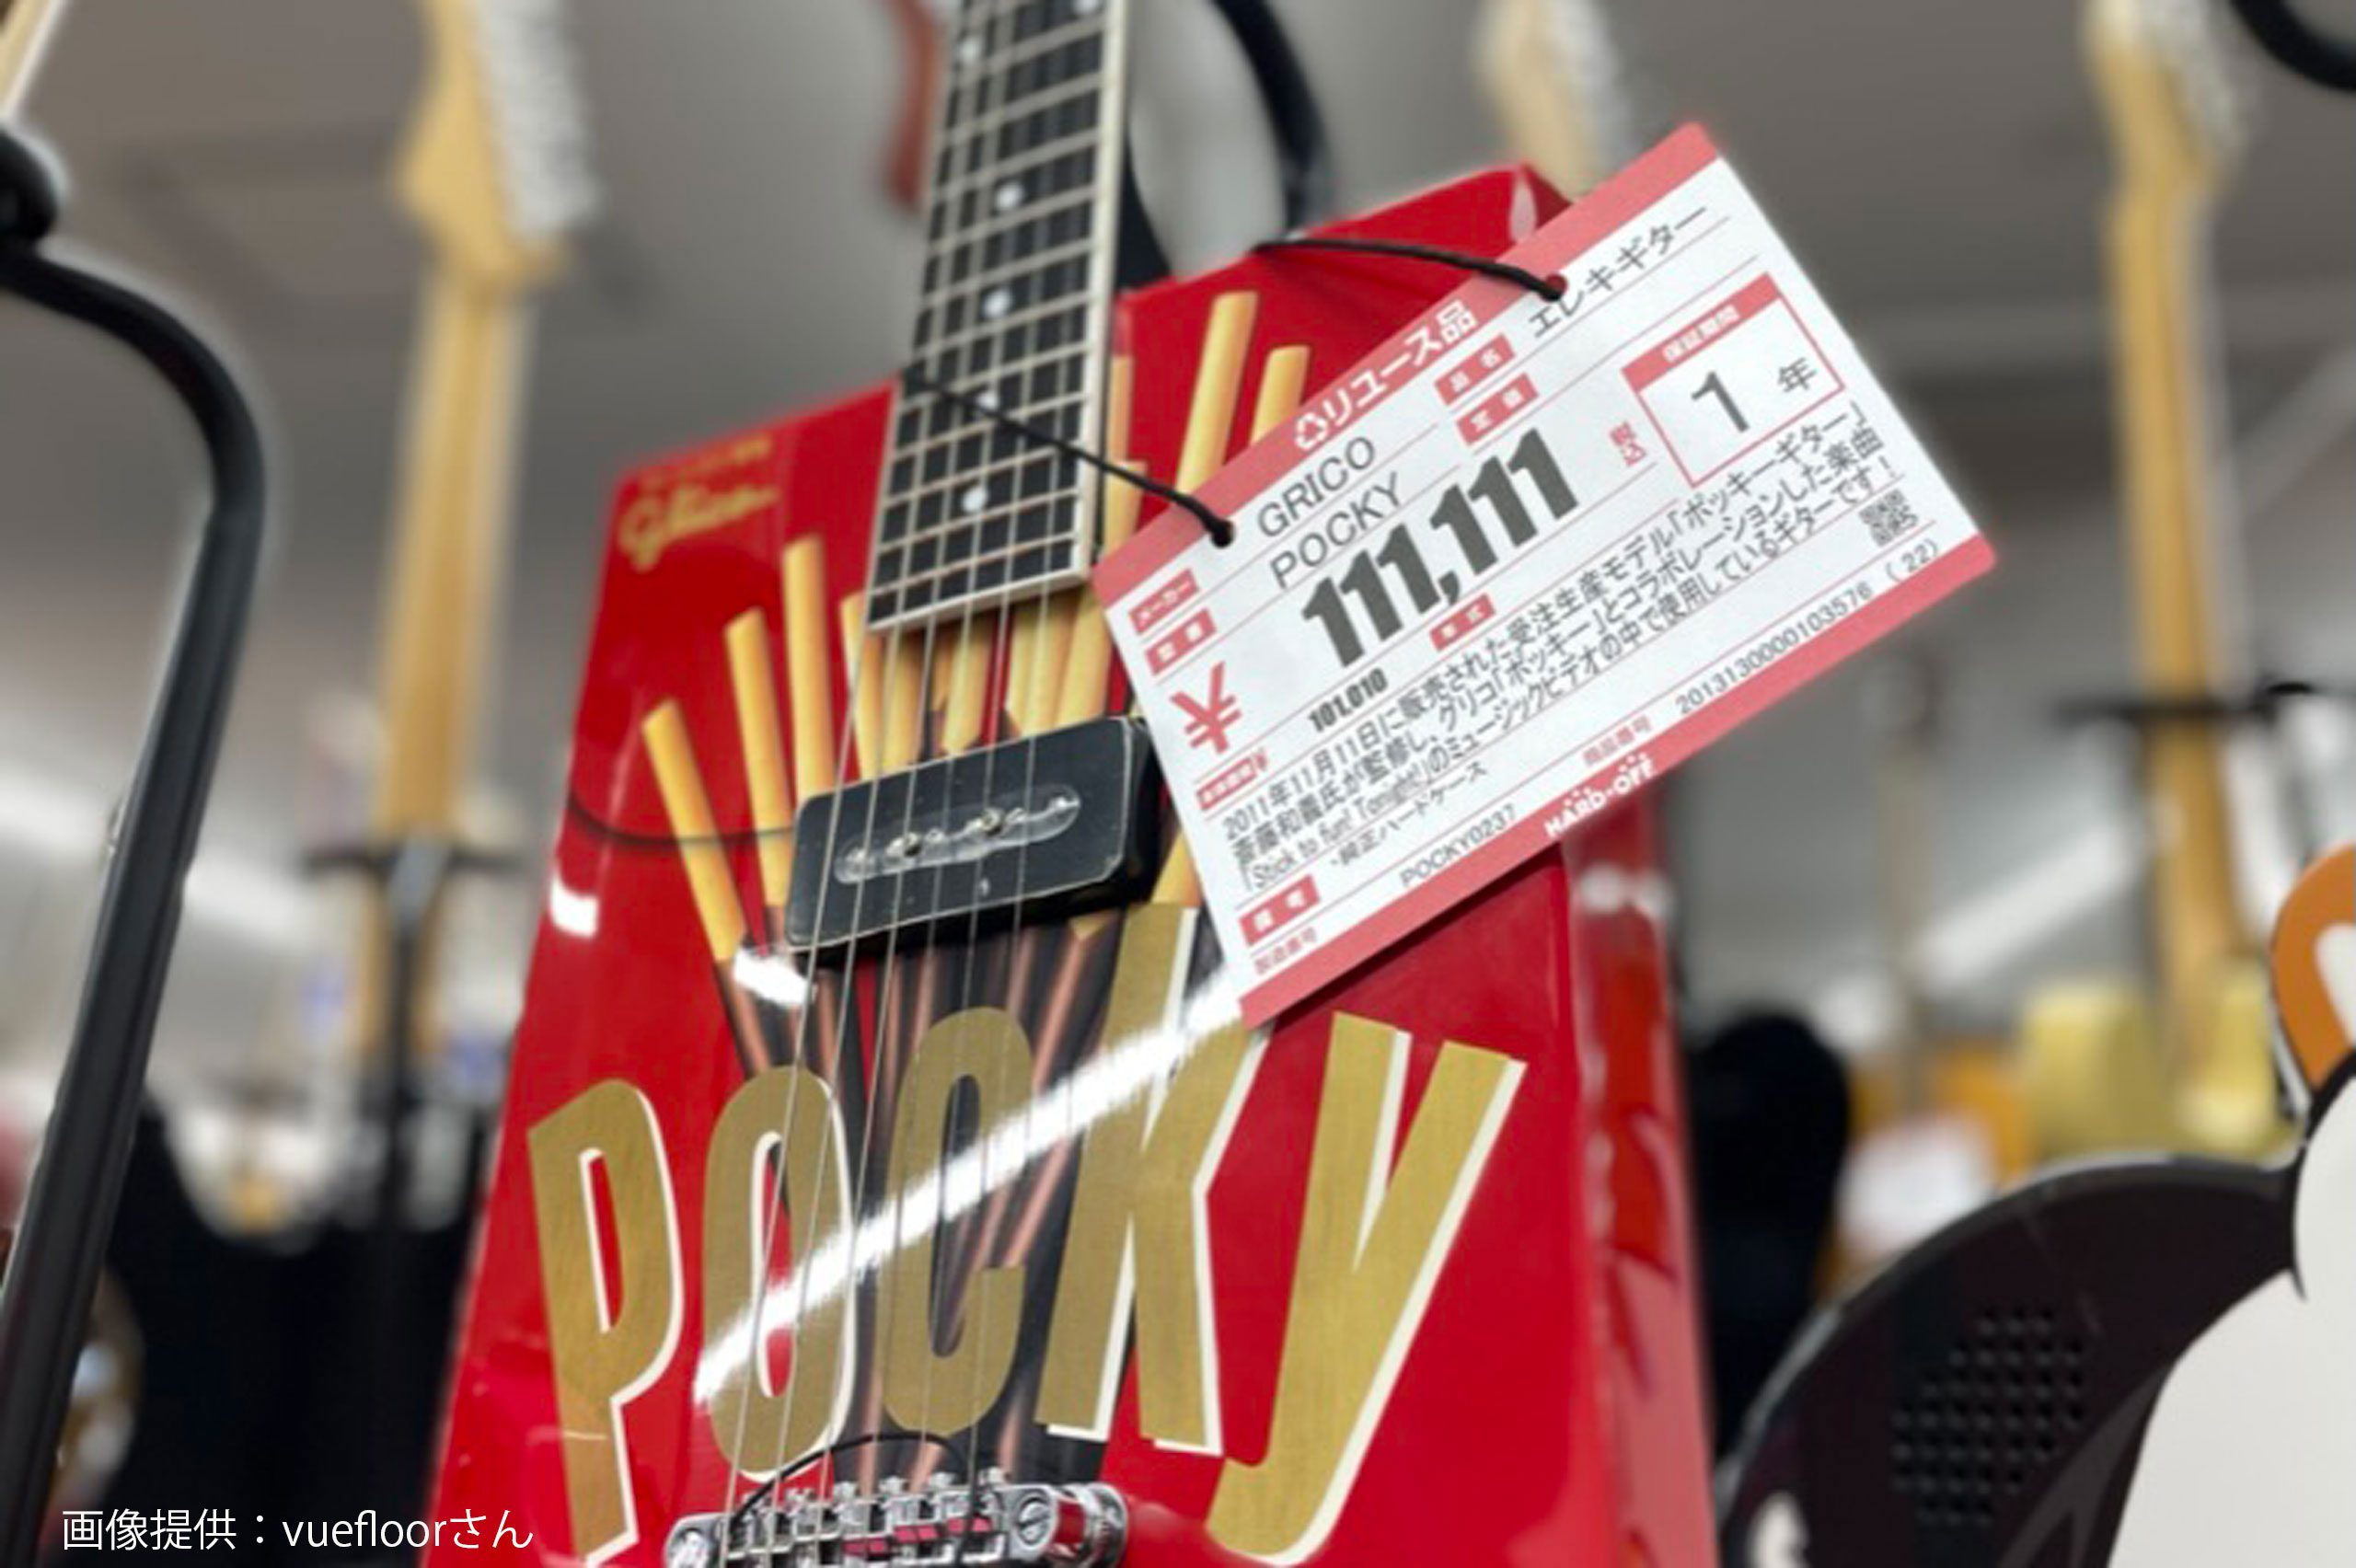 斉藤和義  glico ♬ ポッキーギター ♬︎